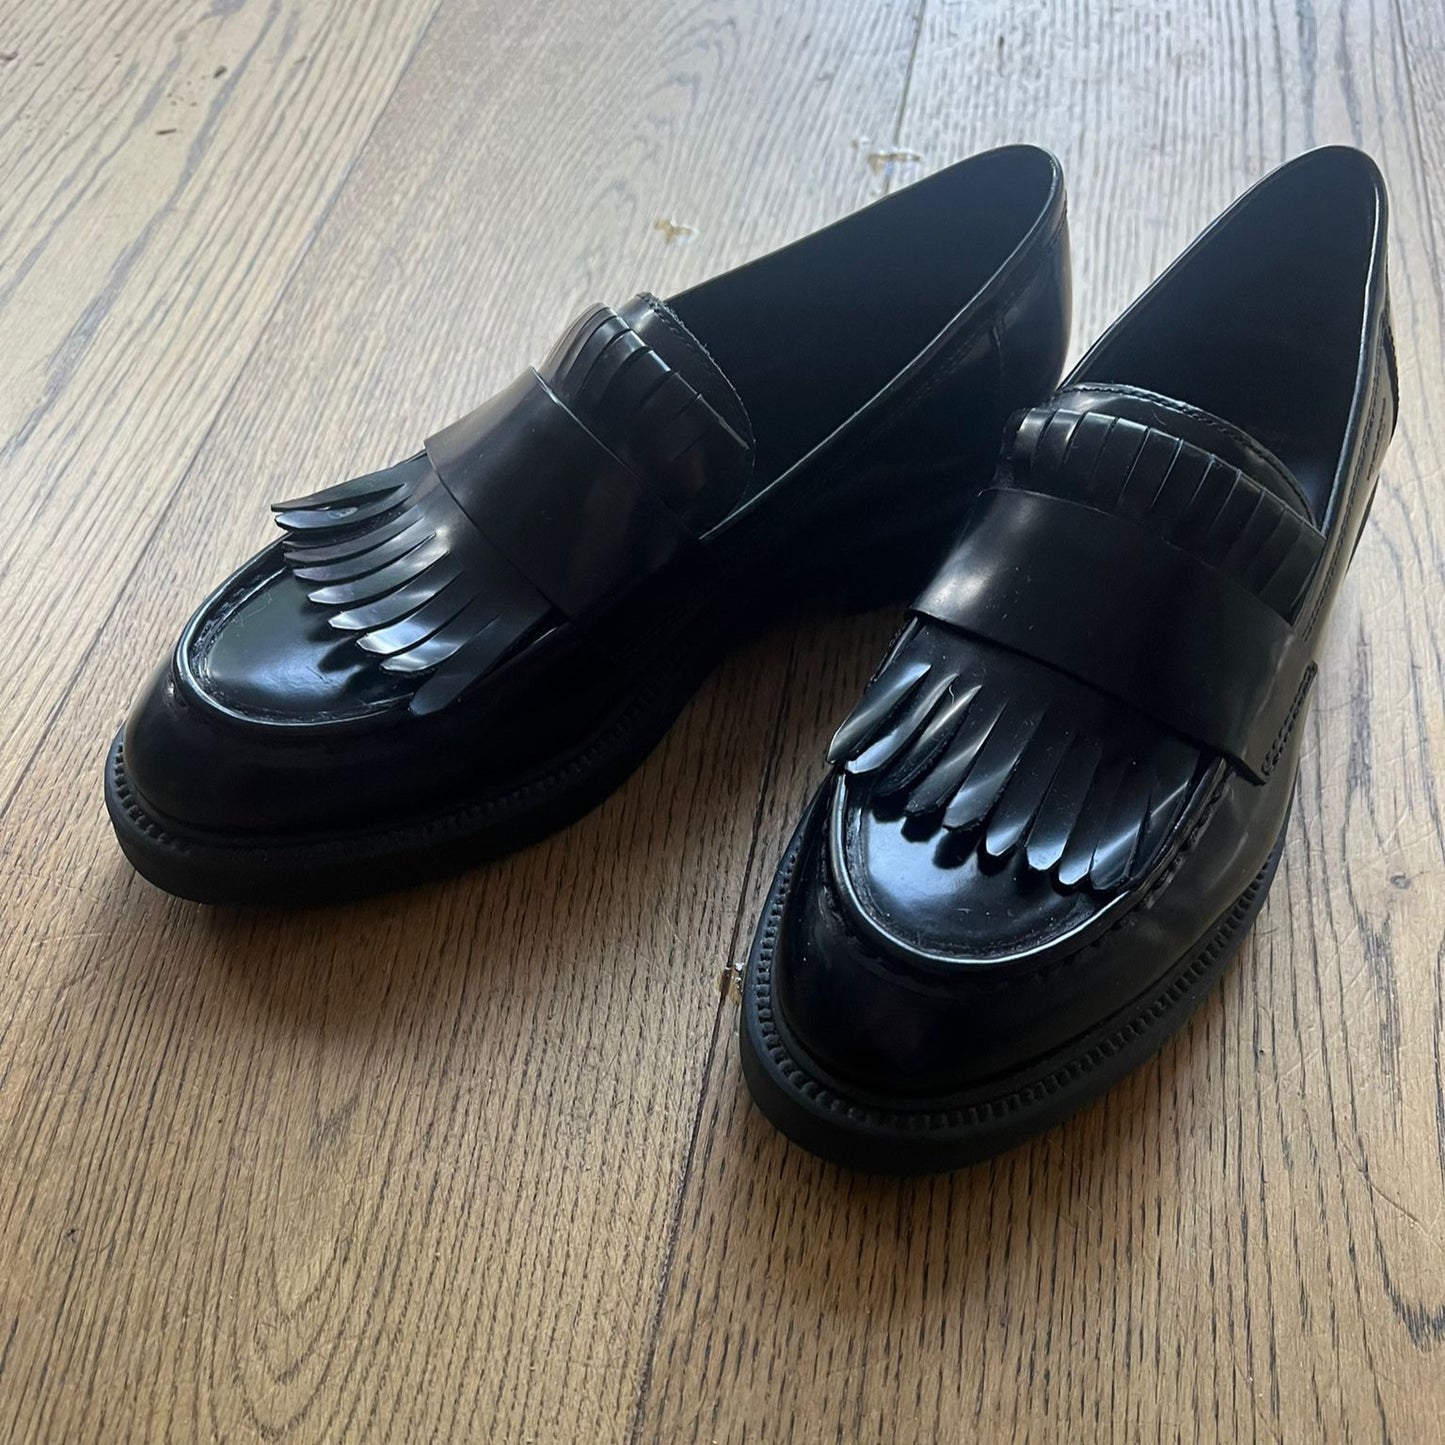 נעלי Loafers שחורות של Vagabond